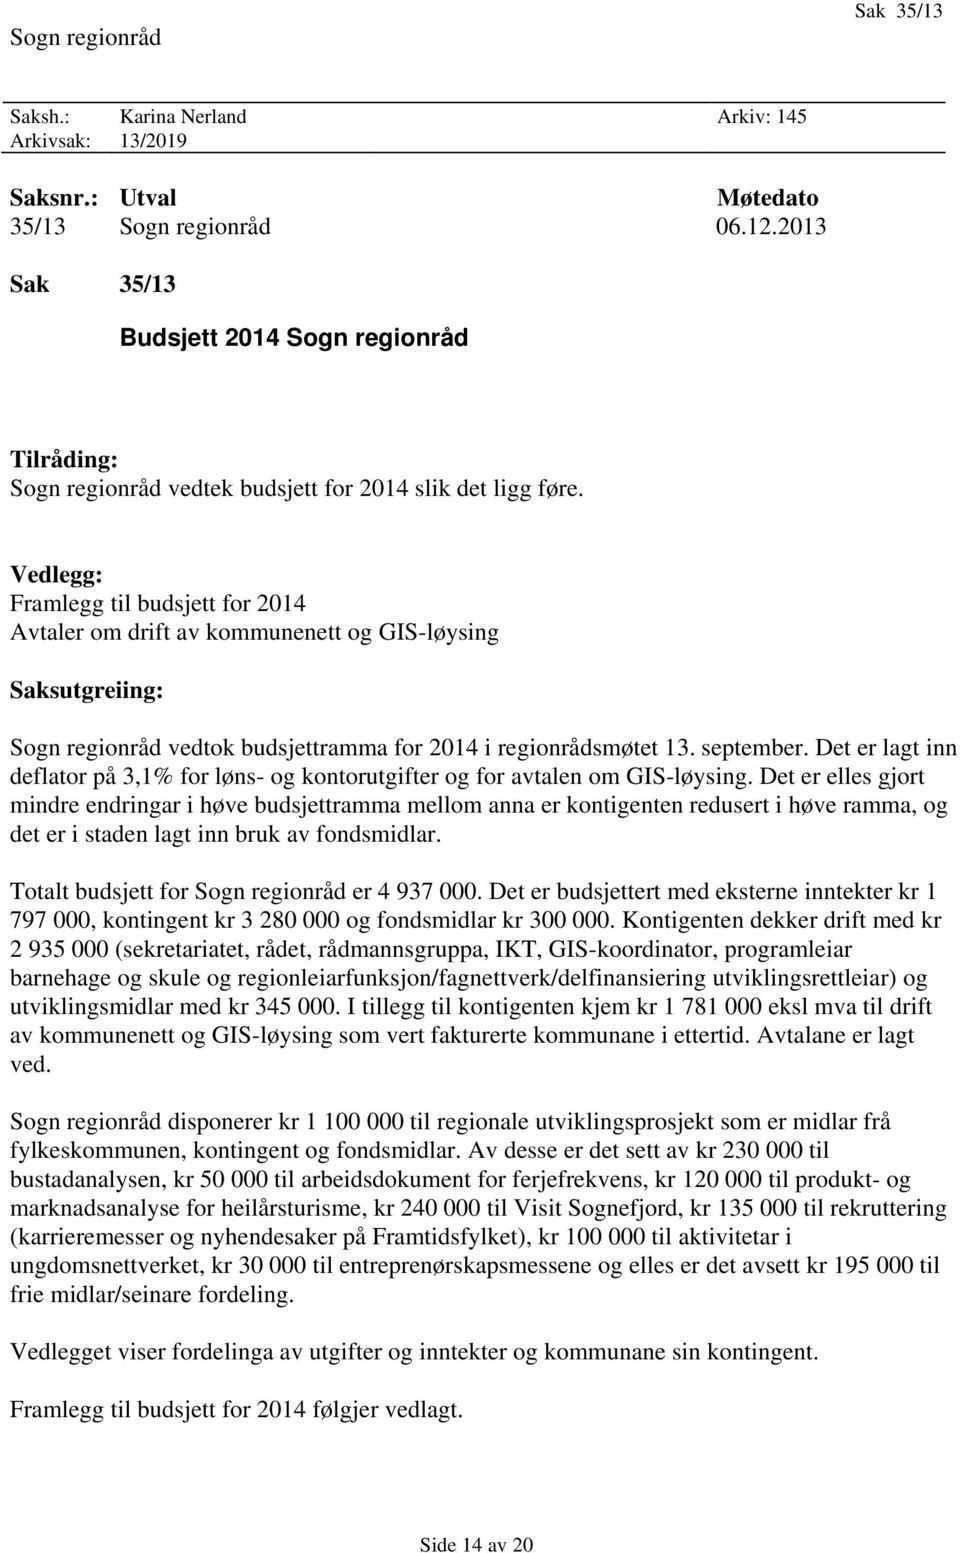 Vedlegg: Framlegg til budsjett for 2014 Avtaler om drift av kommunenett og GIS-løysing Saksutgreiing: Sogn regionråd vedtok budsjettramma for 2014 i regionrådsmøtet 13. september.